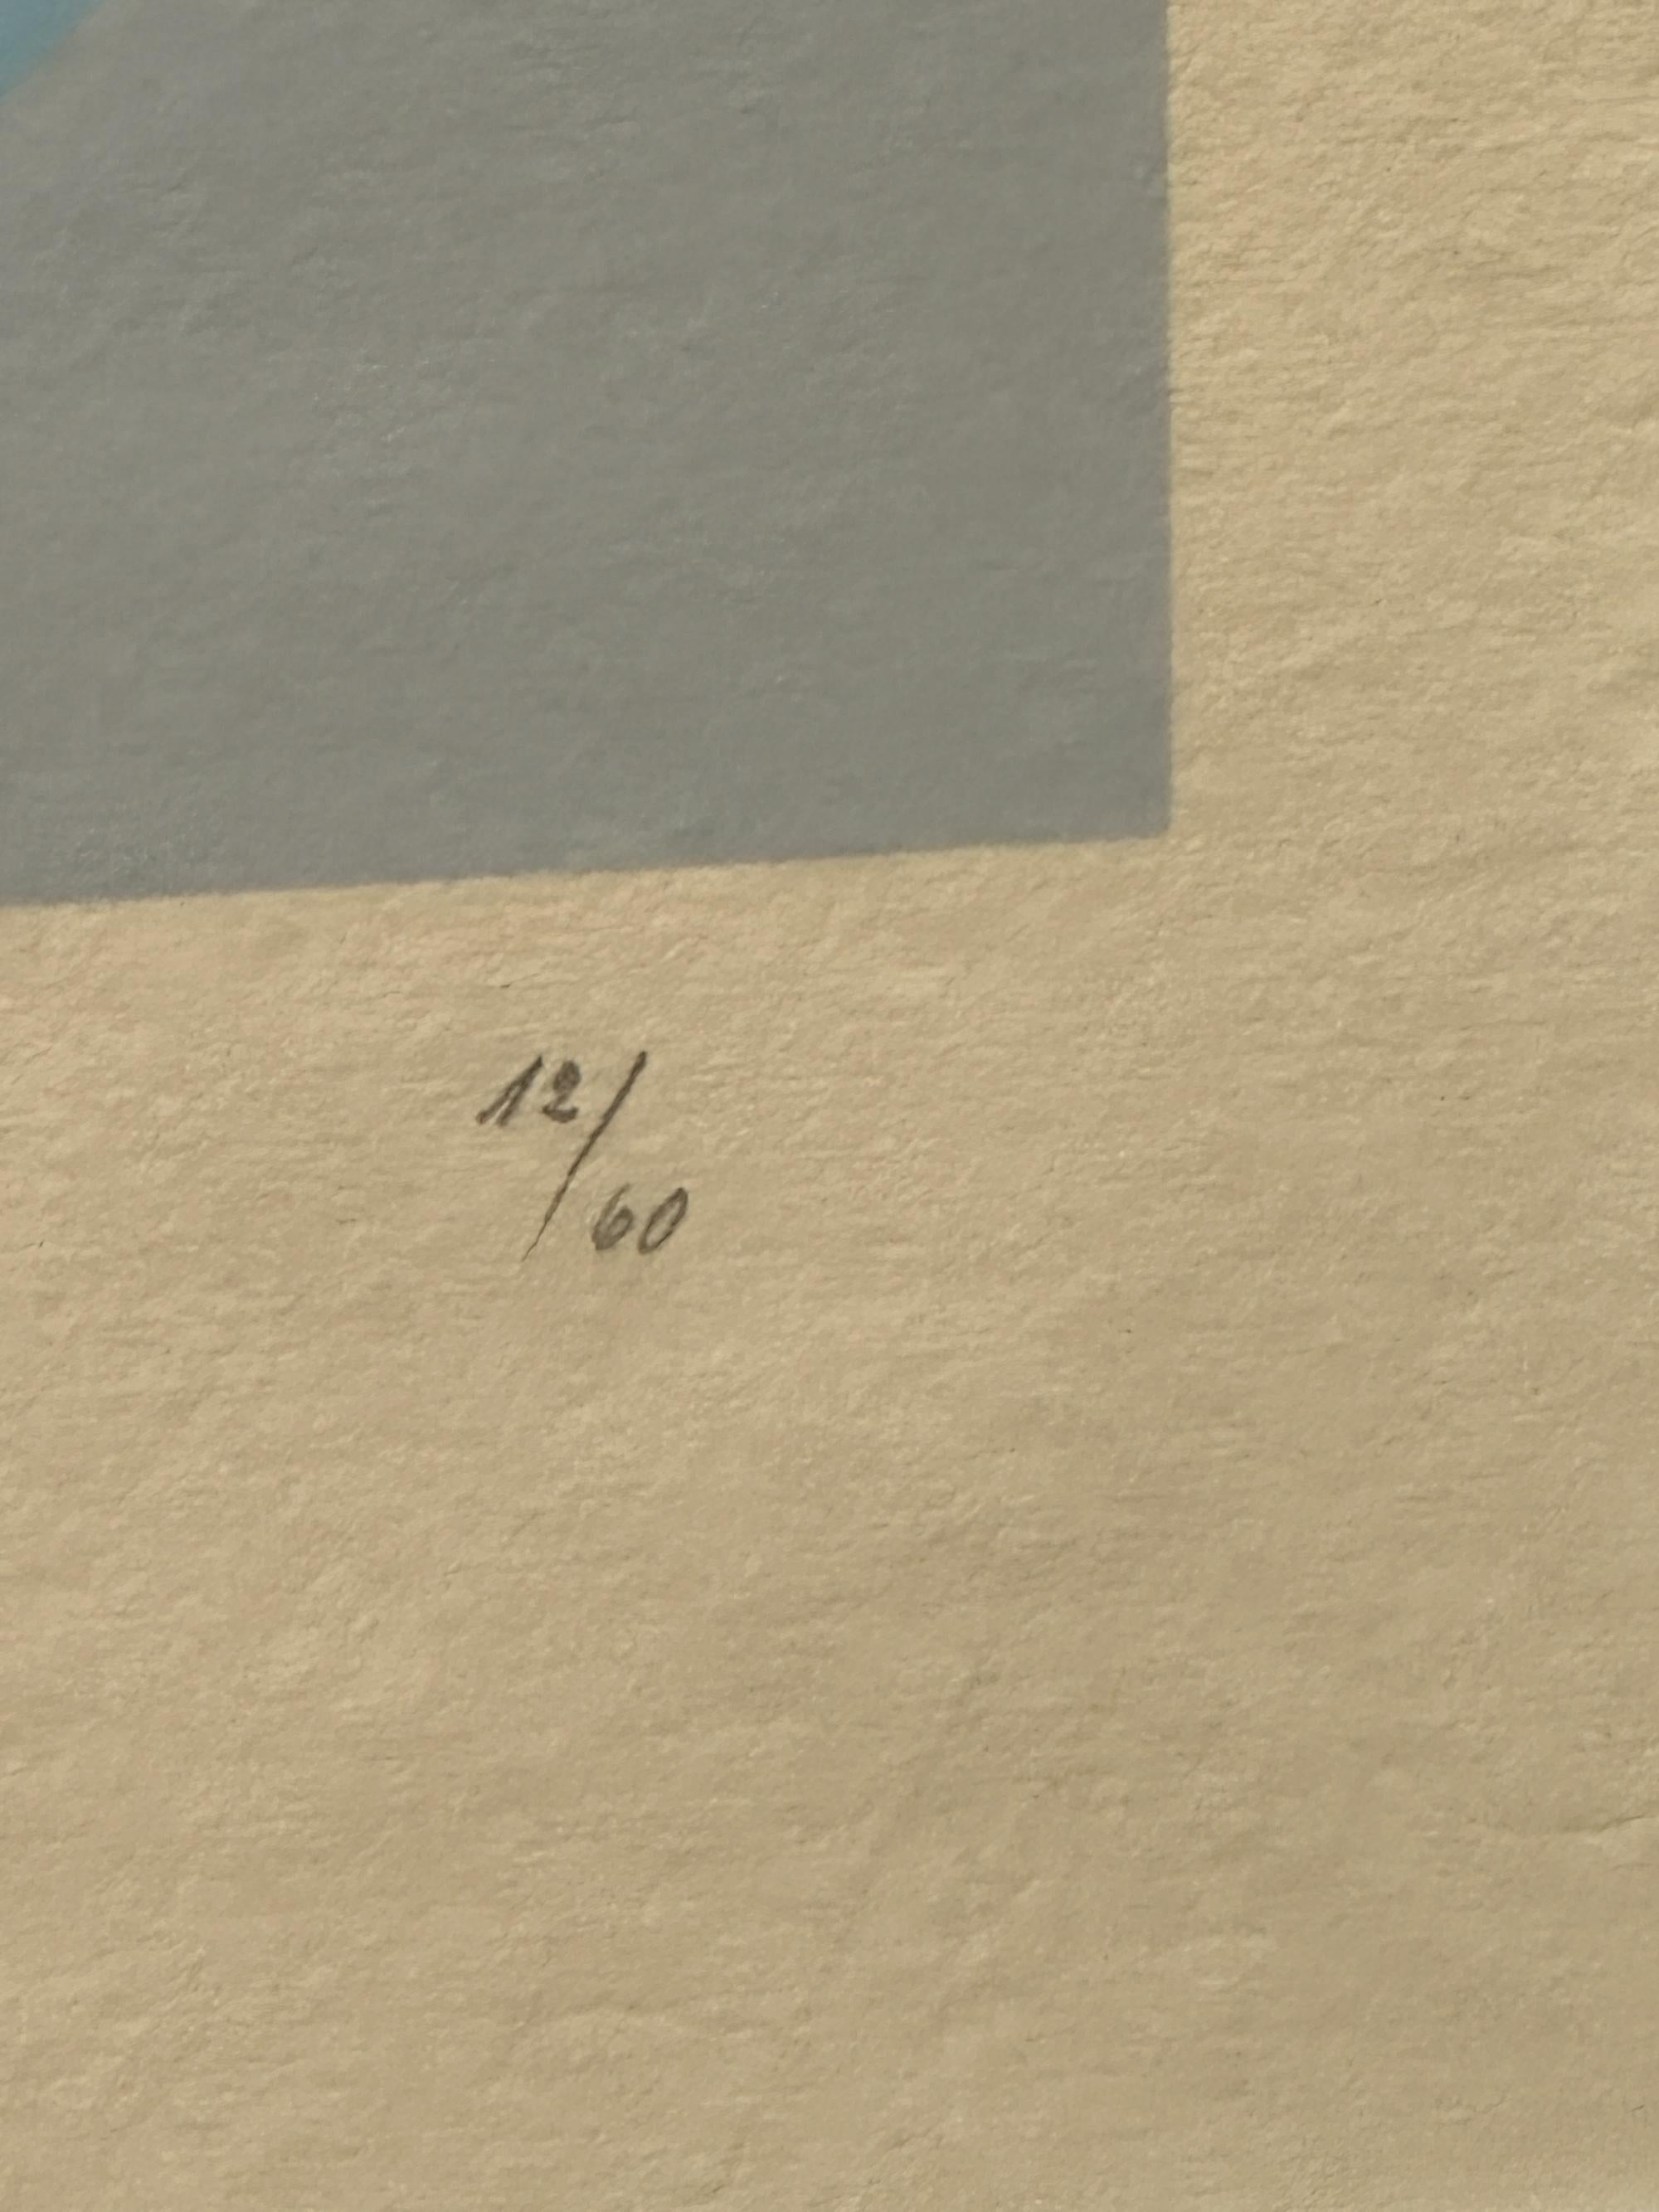 Jean Arp, 
Unbenannt 
aus Soleil Recerclé XVIII, 
1966 Holzschnitt auf Auvergne-Papier, 

Blatt: 19 x 15 Zoll
Bild: 14 x 13,5 Zoll
Rahmen: 23 x 27 Zoll
Ausgabe: 12/60

Mit Bleistift signiert
